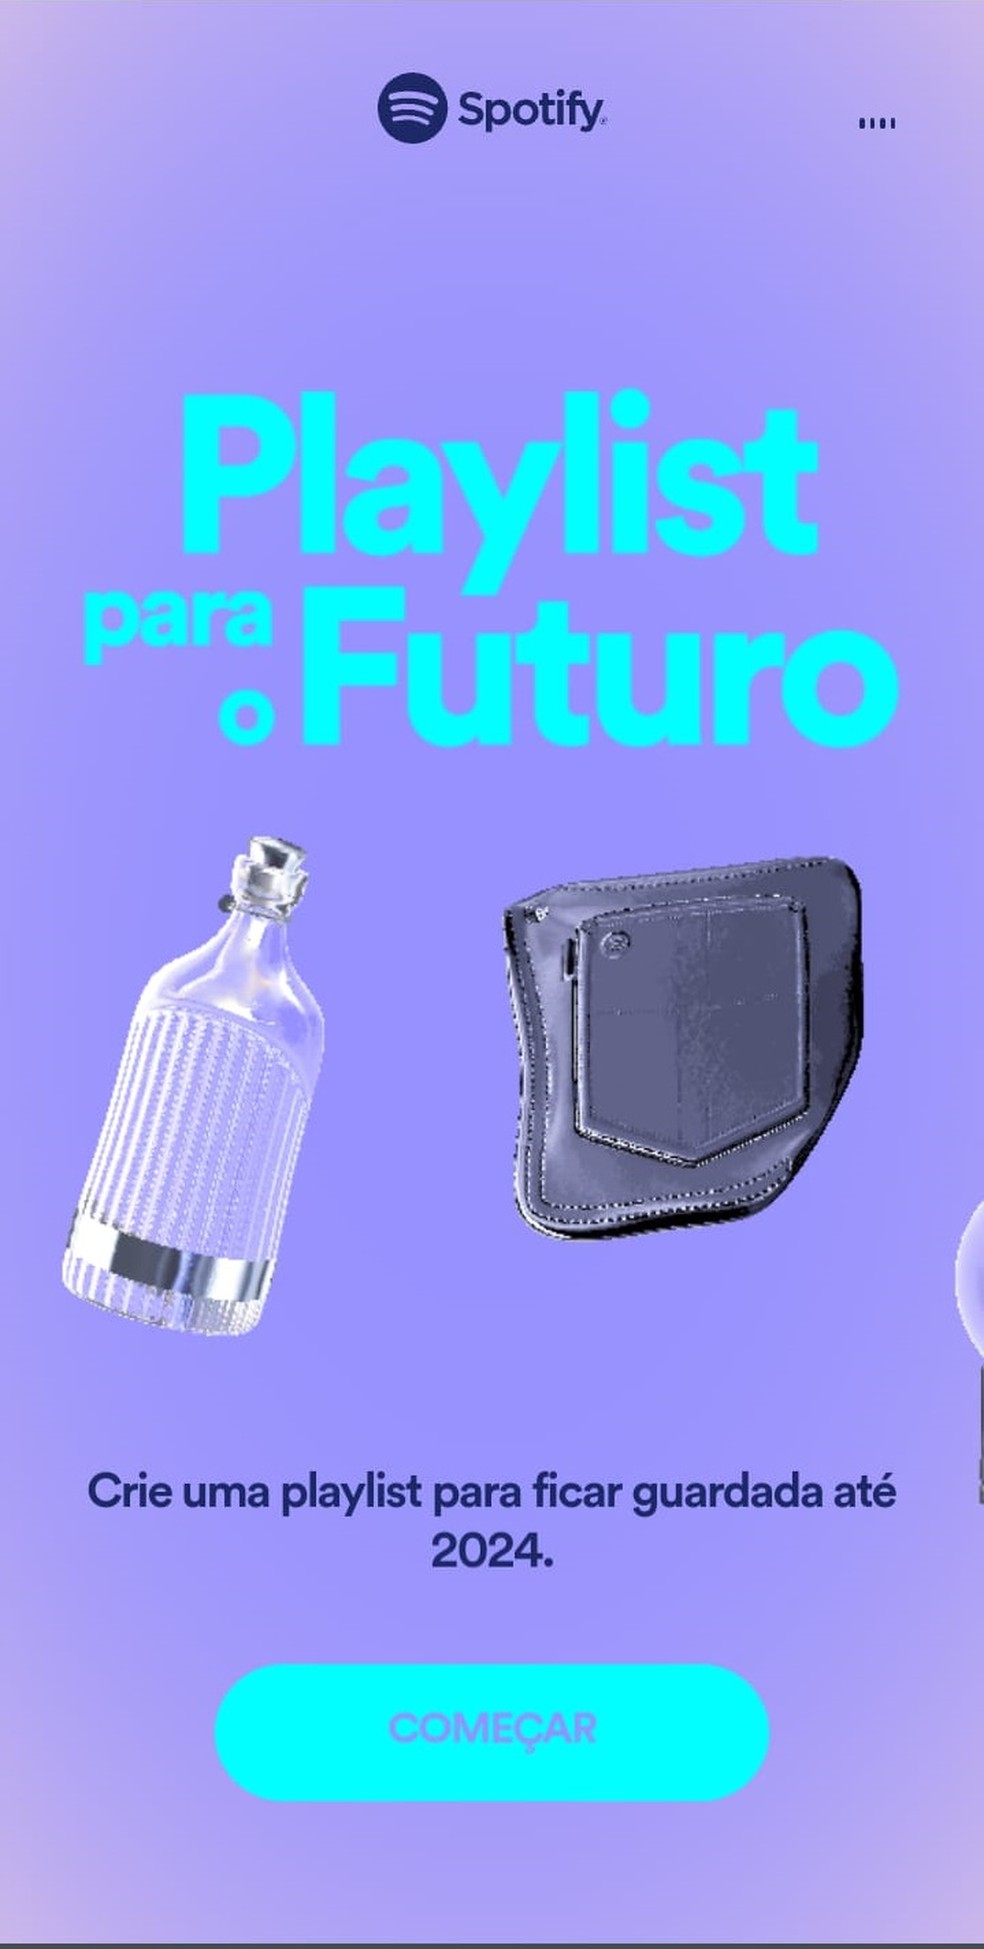 Veja como criar a sua “Playlist para o Futuro“ no Spotify